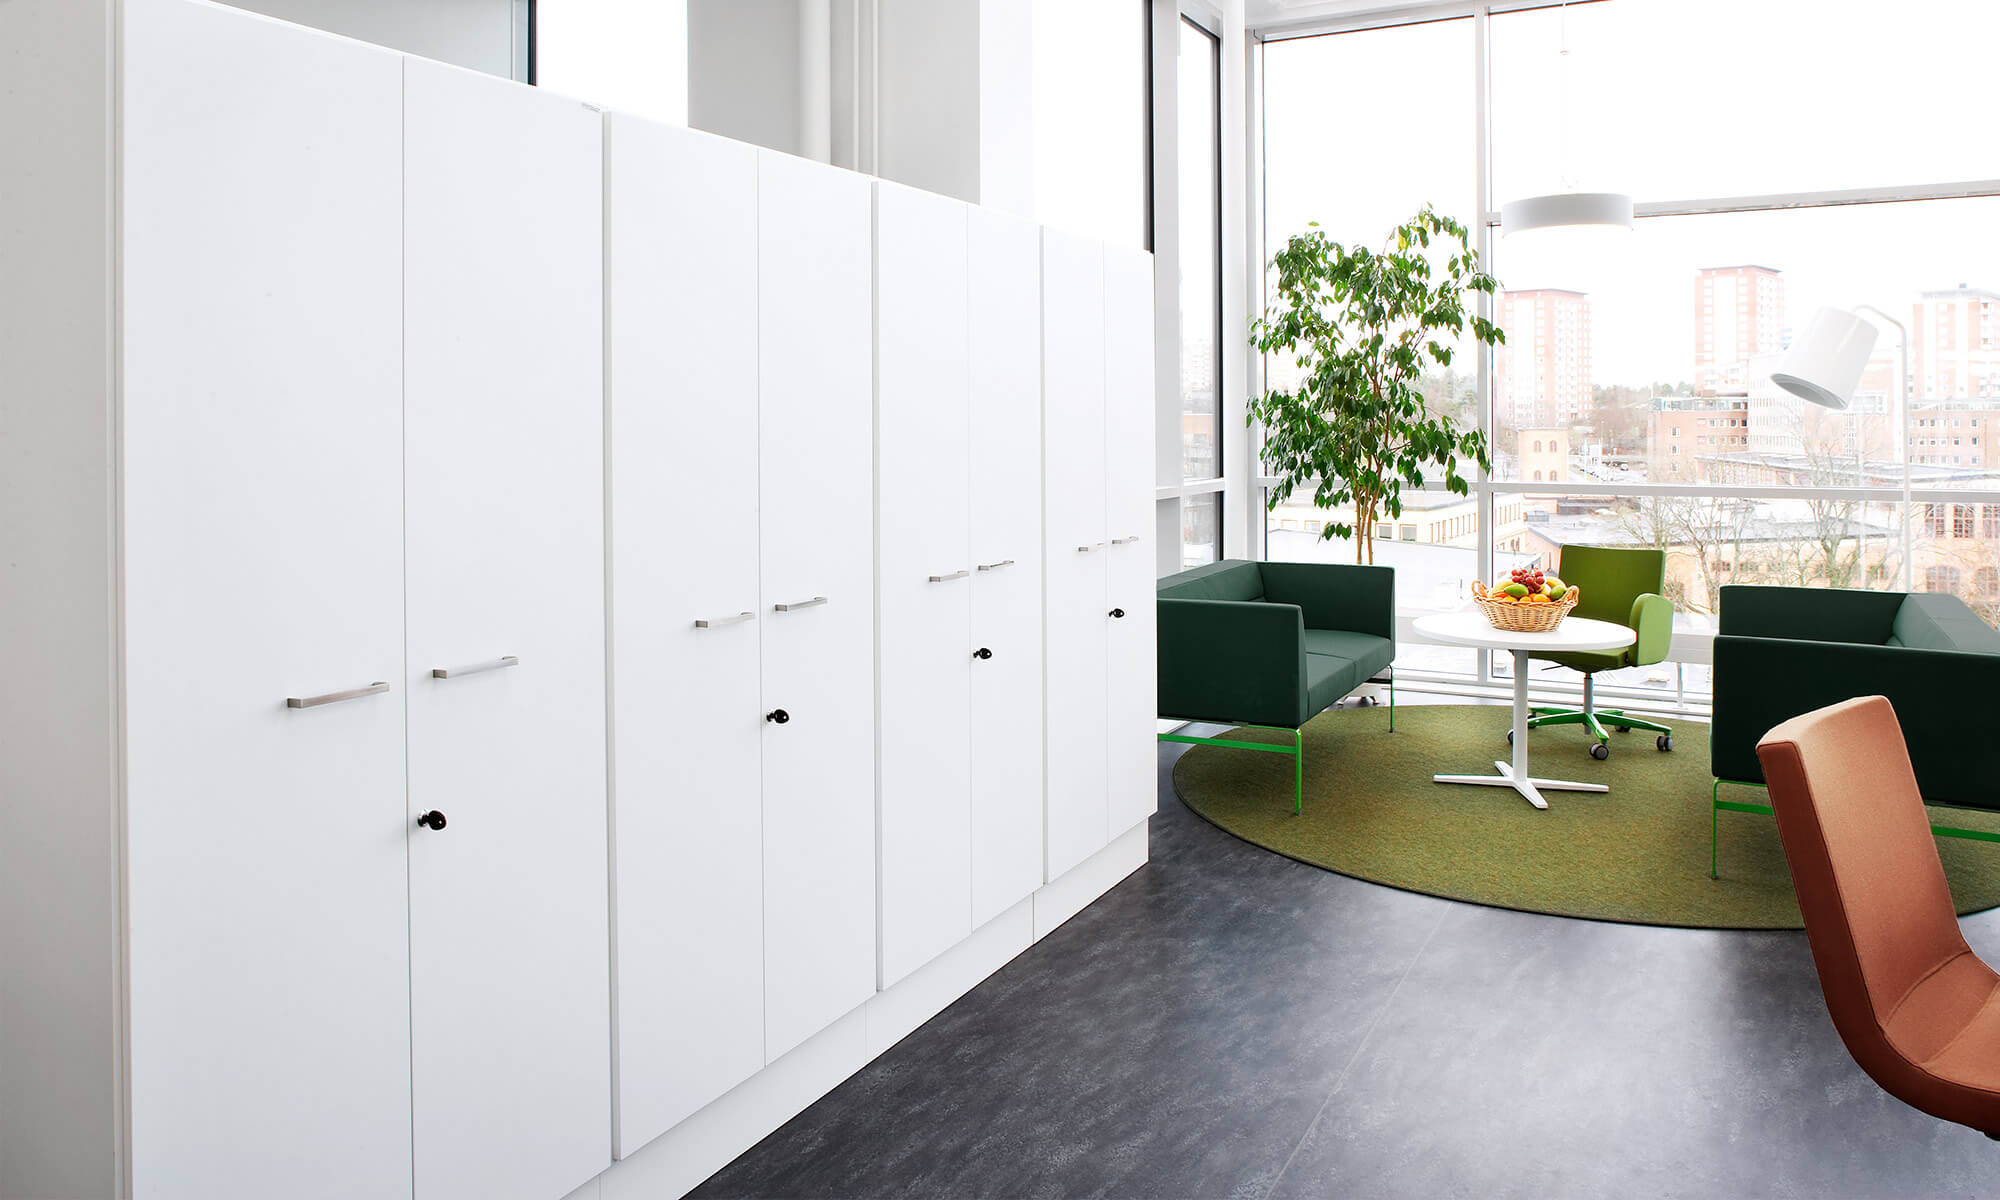 kontorsskåp hylla förvaring storage möbelfakta kontorsförvaring office storage trece shelves